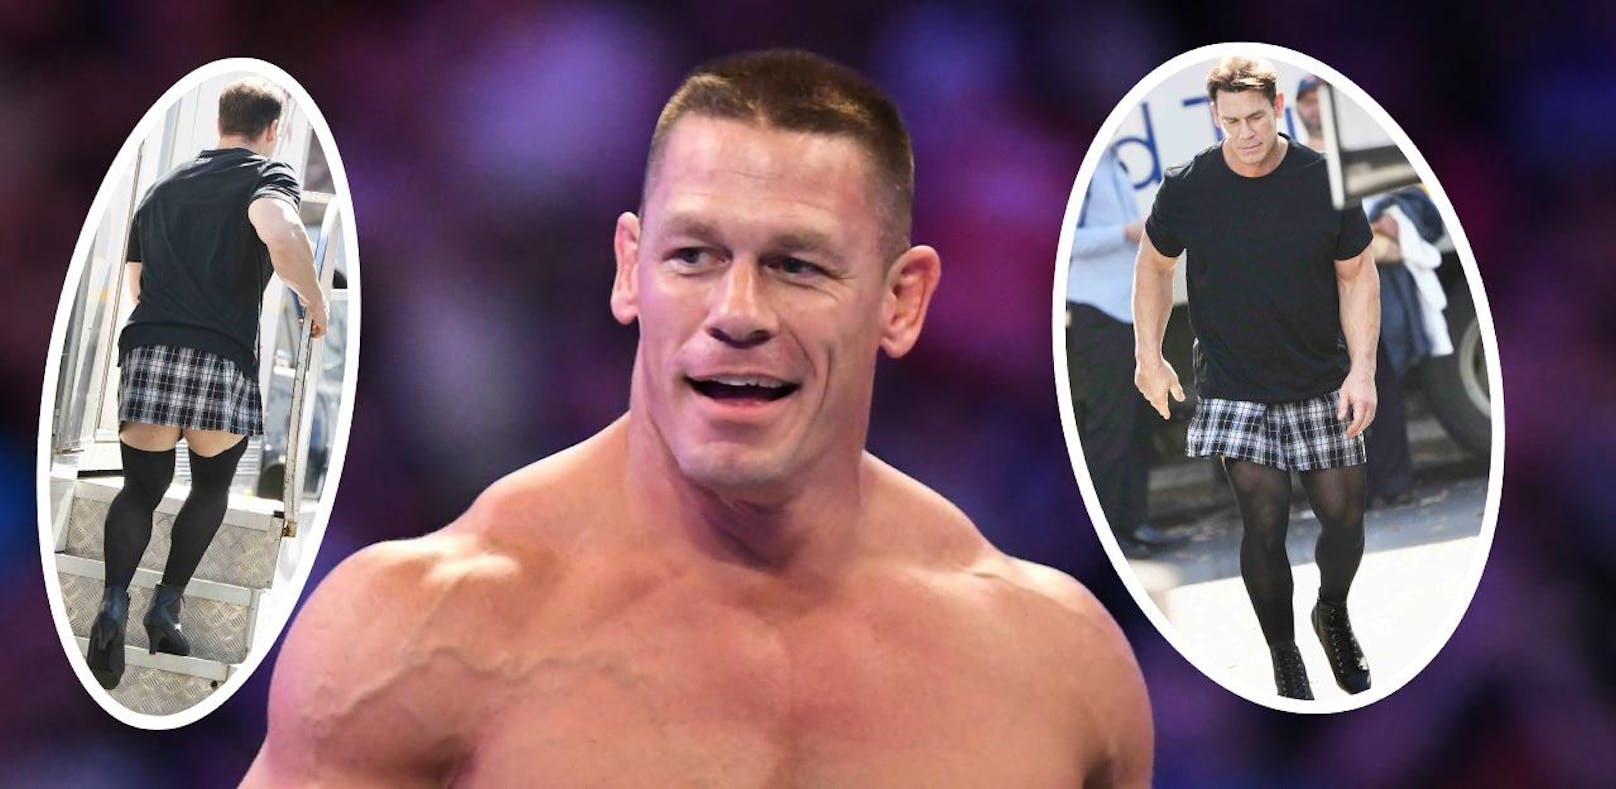 Auch in Rock und High Heels macht John Cena eine gute Figur.